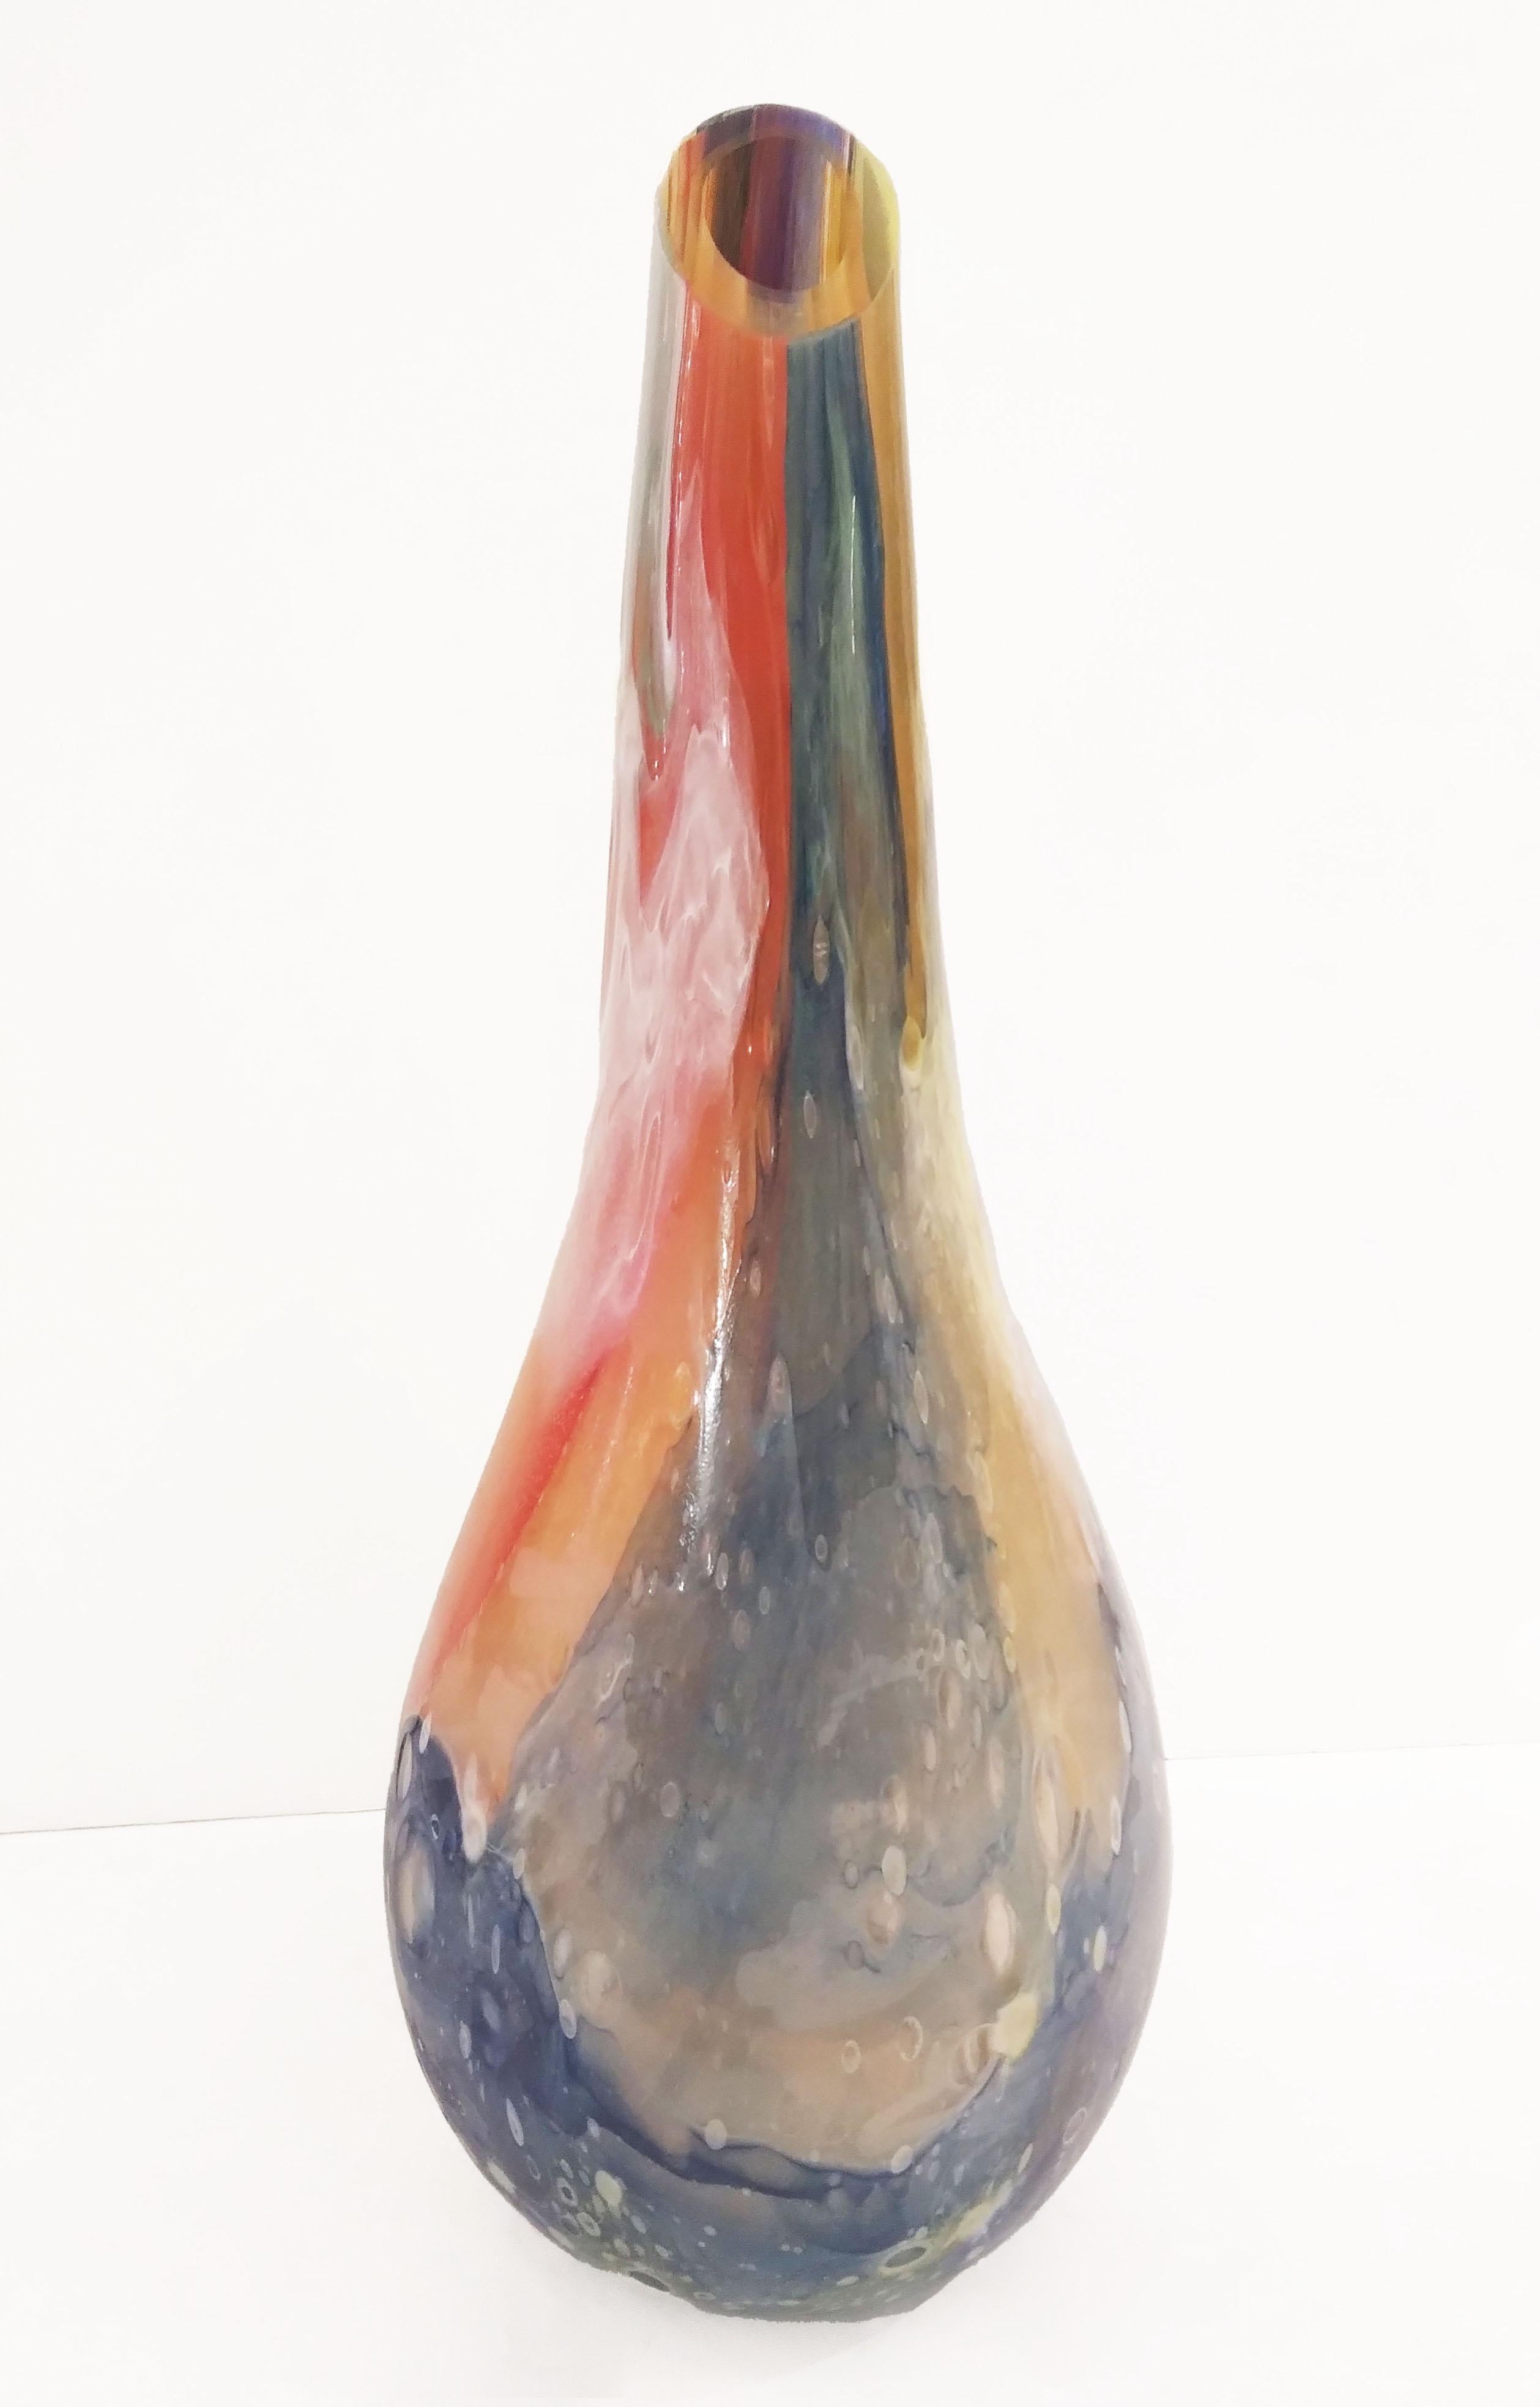 Vénitien moderne épais vase de fleurs en verre de Murano de haute qualité, largement travaillé avec des couleurs superposées soufflées Murrine, les plusieurs couches de verre, et le travail en Bulicante : bulles géantes dans la masse, créer une